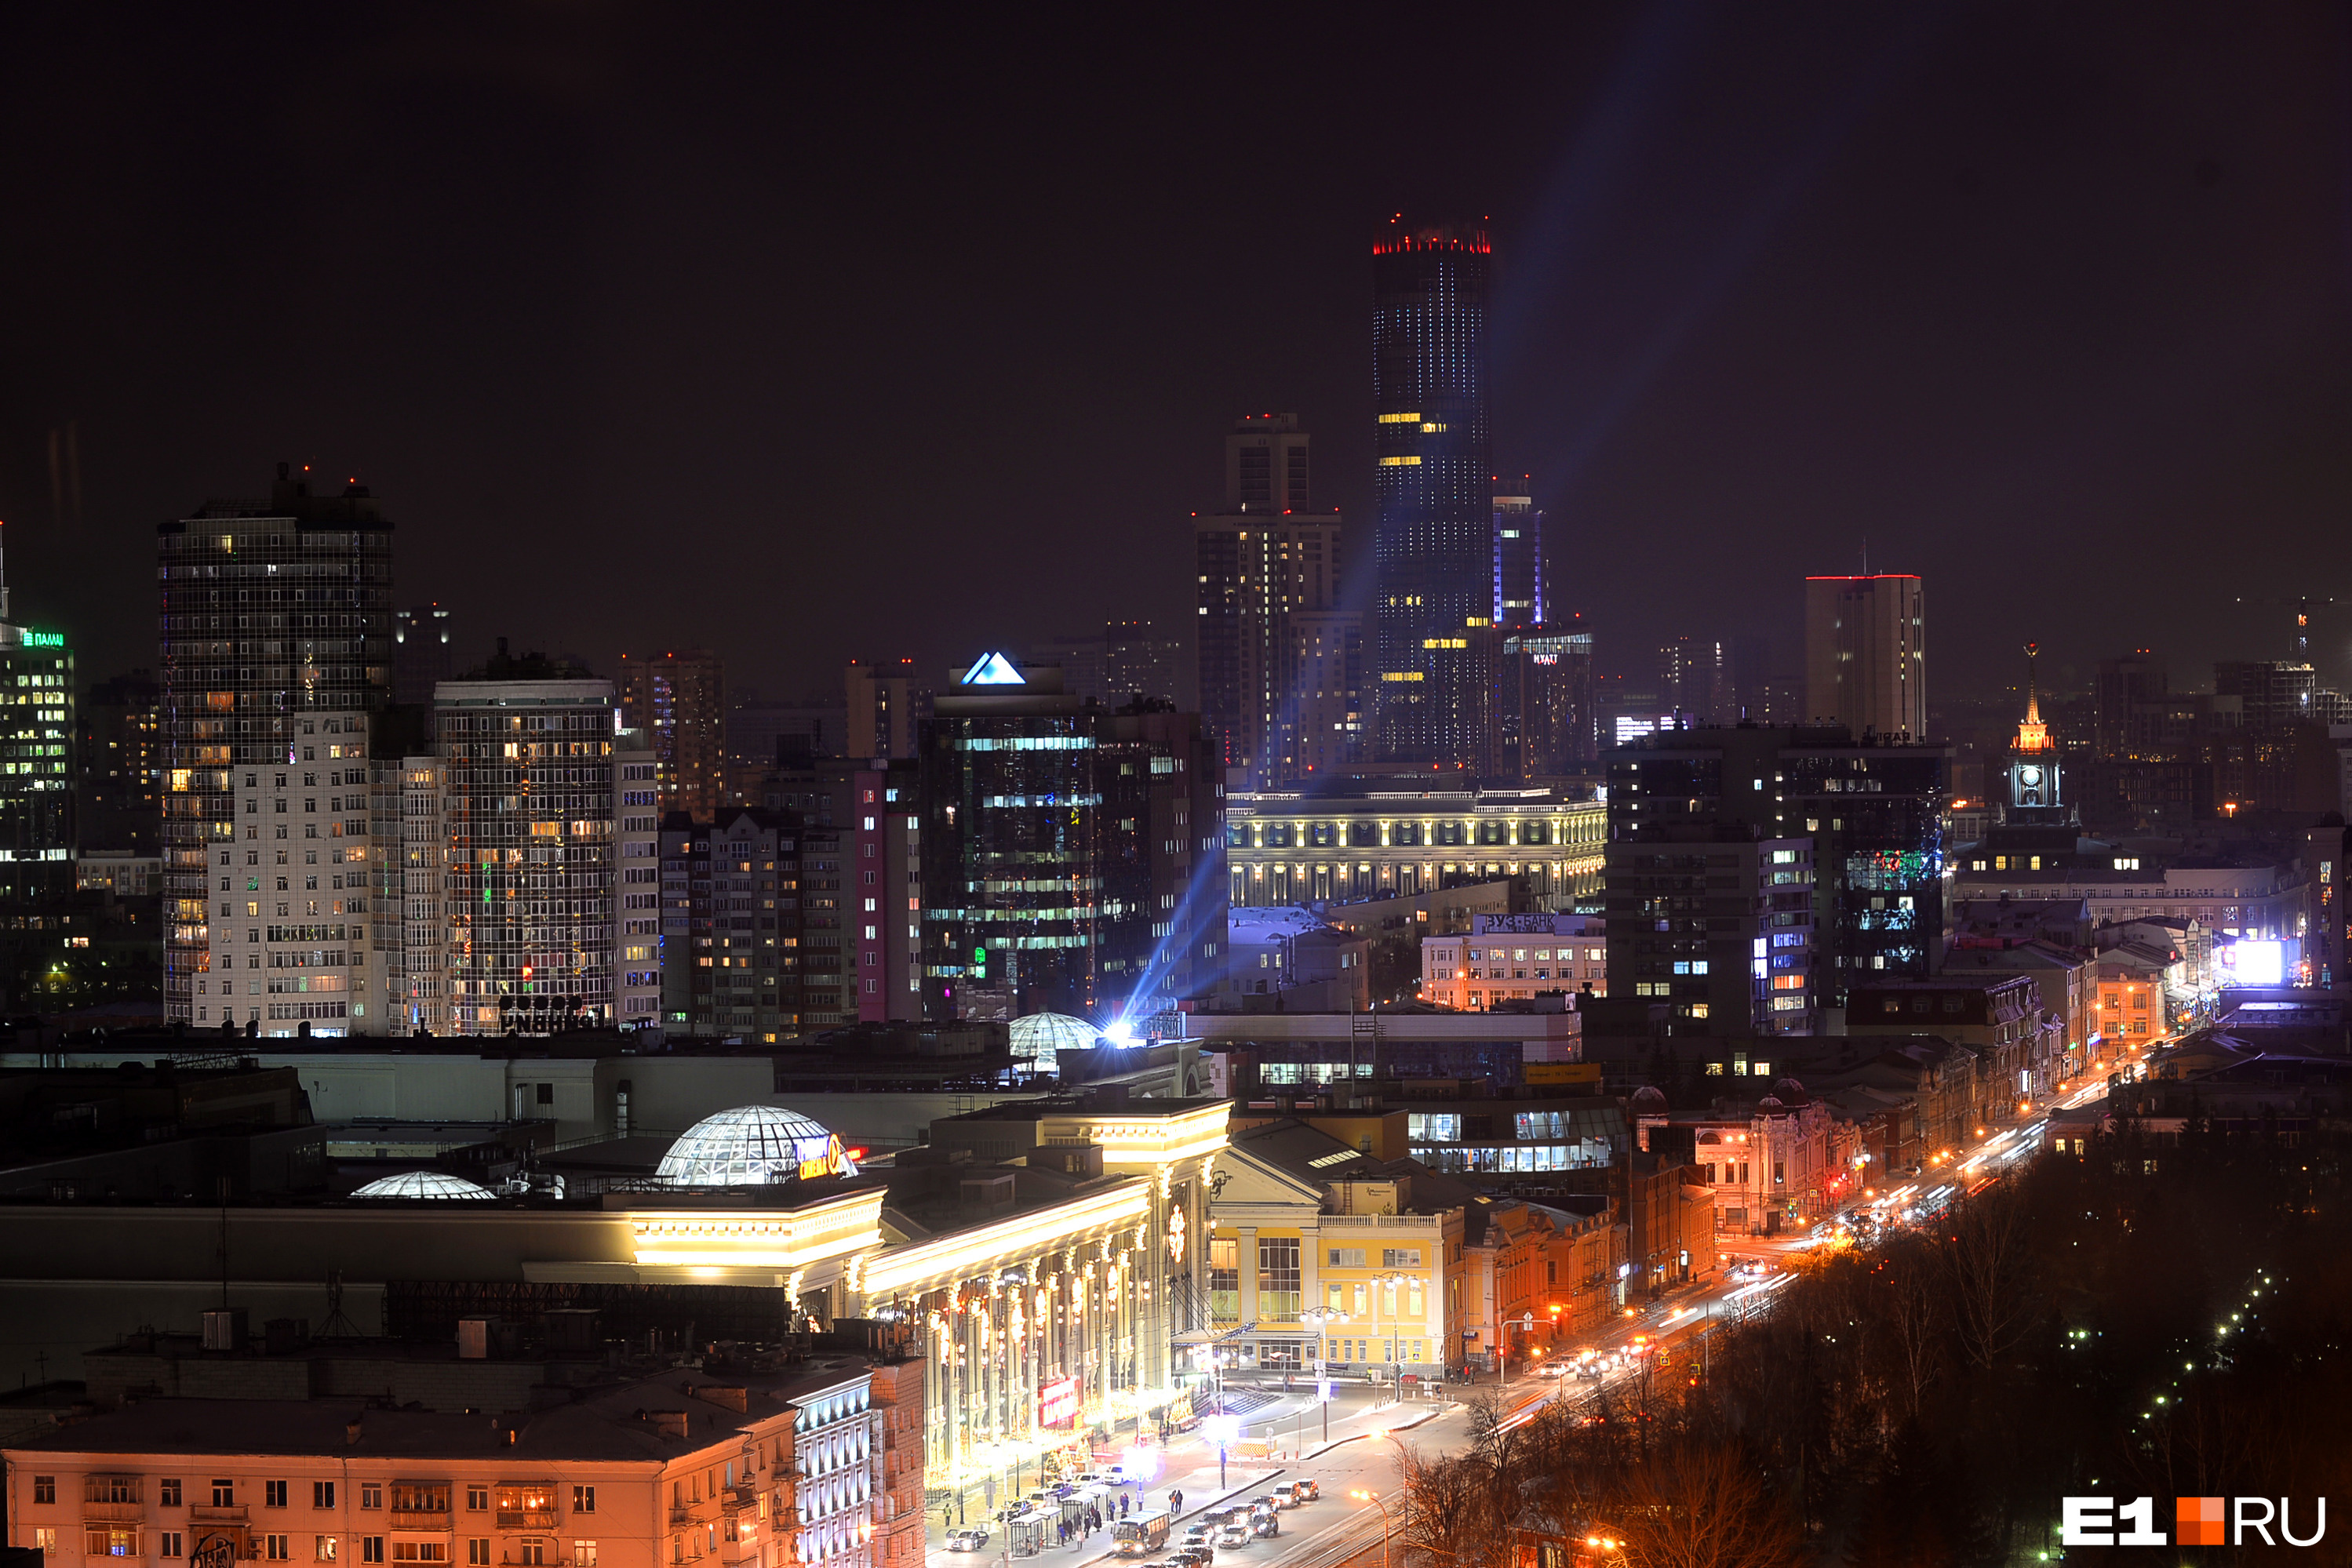 В небе над центром Екатеринбурга заметили странные столбы света. Что это?